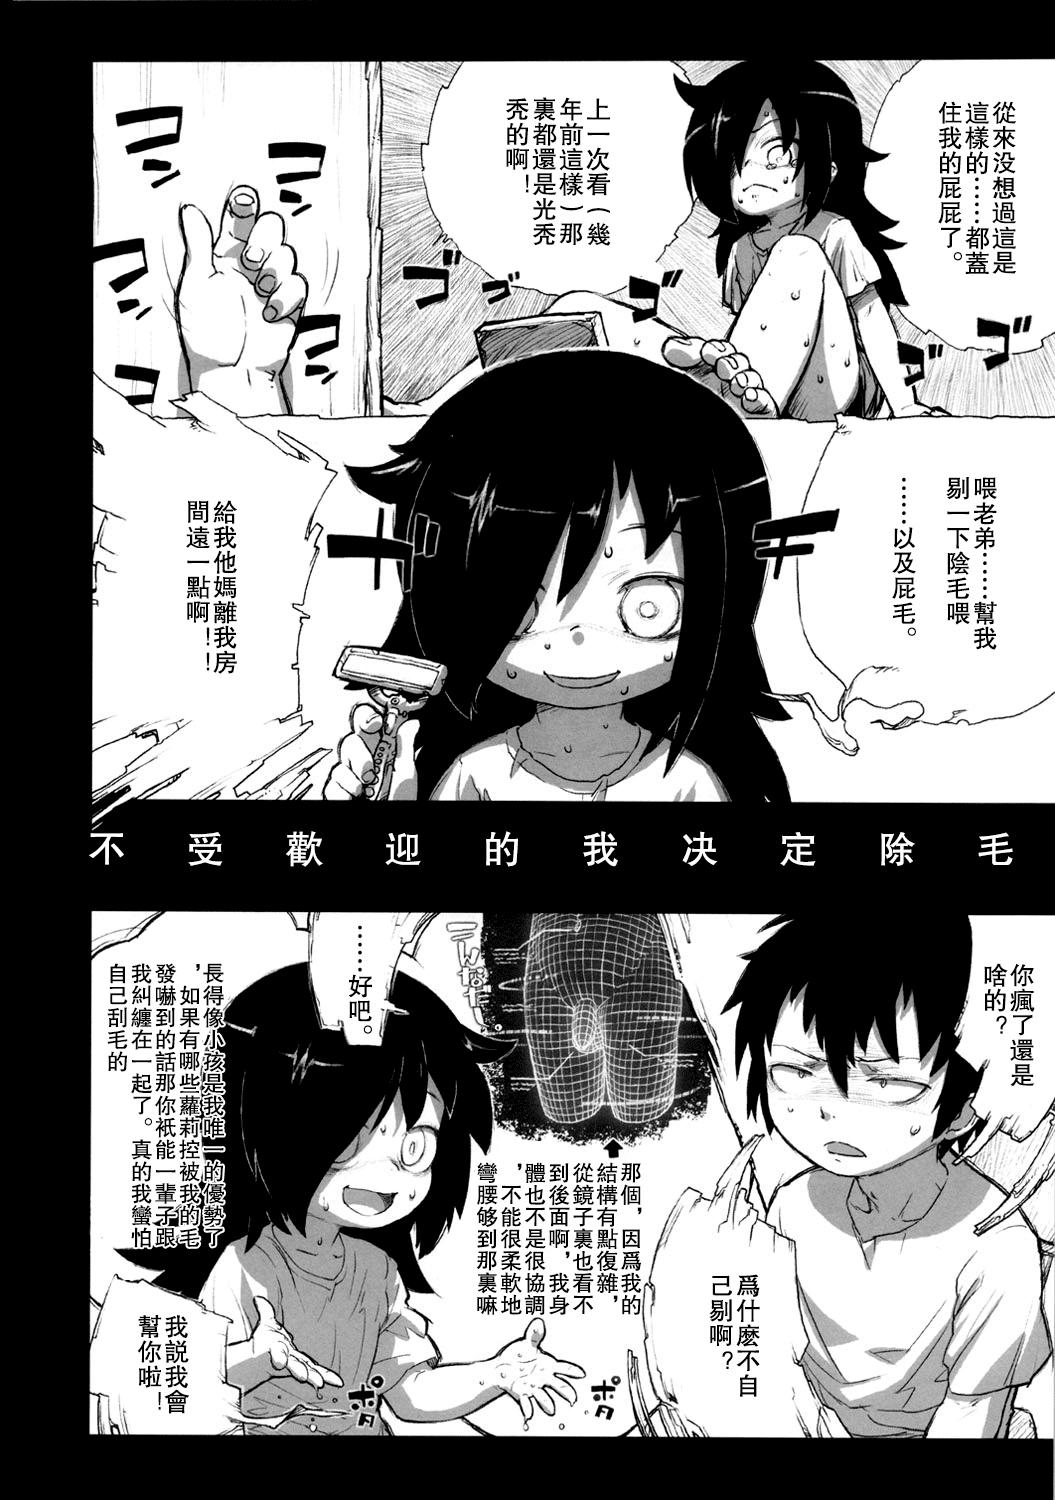 Watashi ga Sex Dekinai no wa dou Kangaete mo Koitsu ga Warui! 49